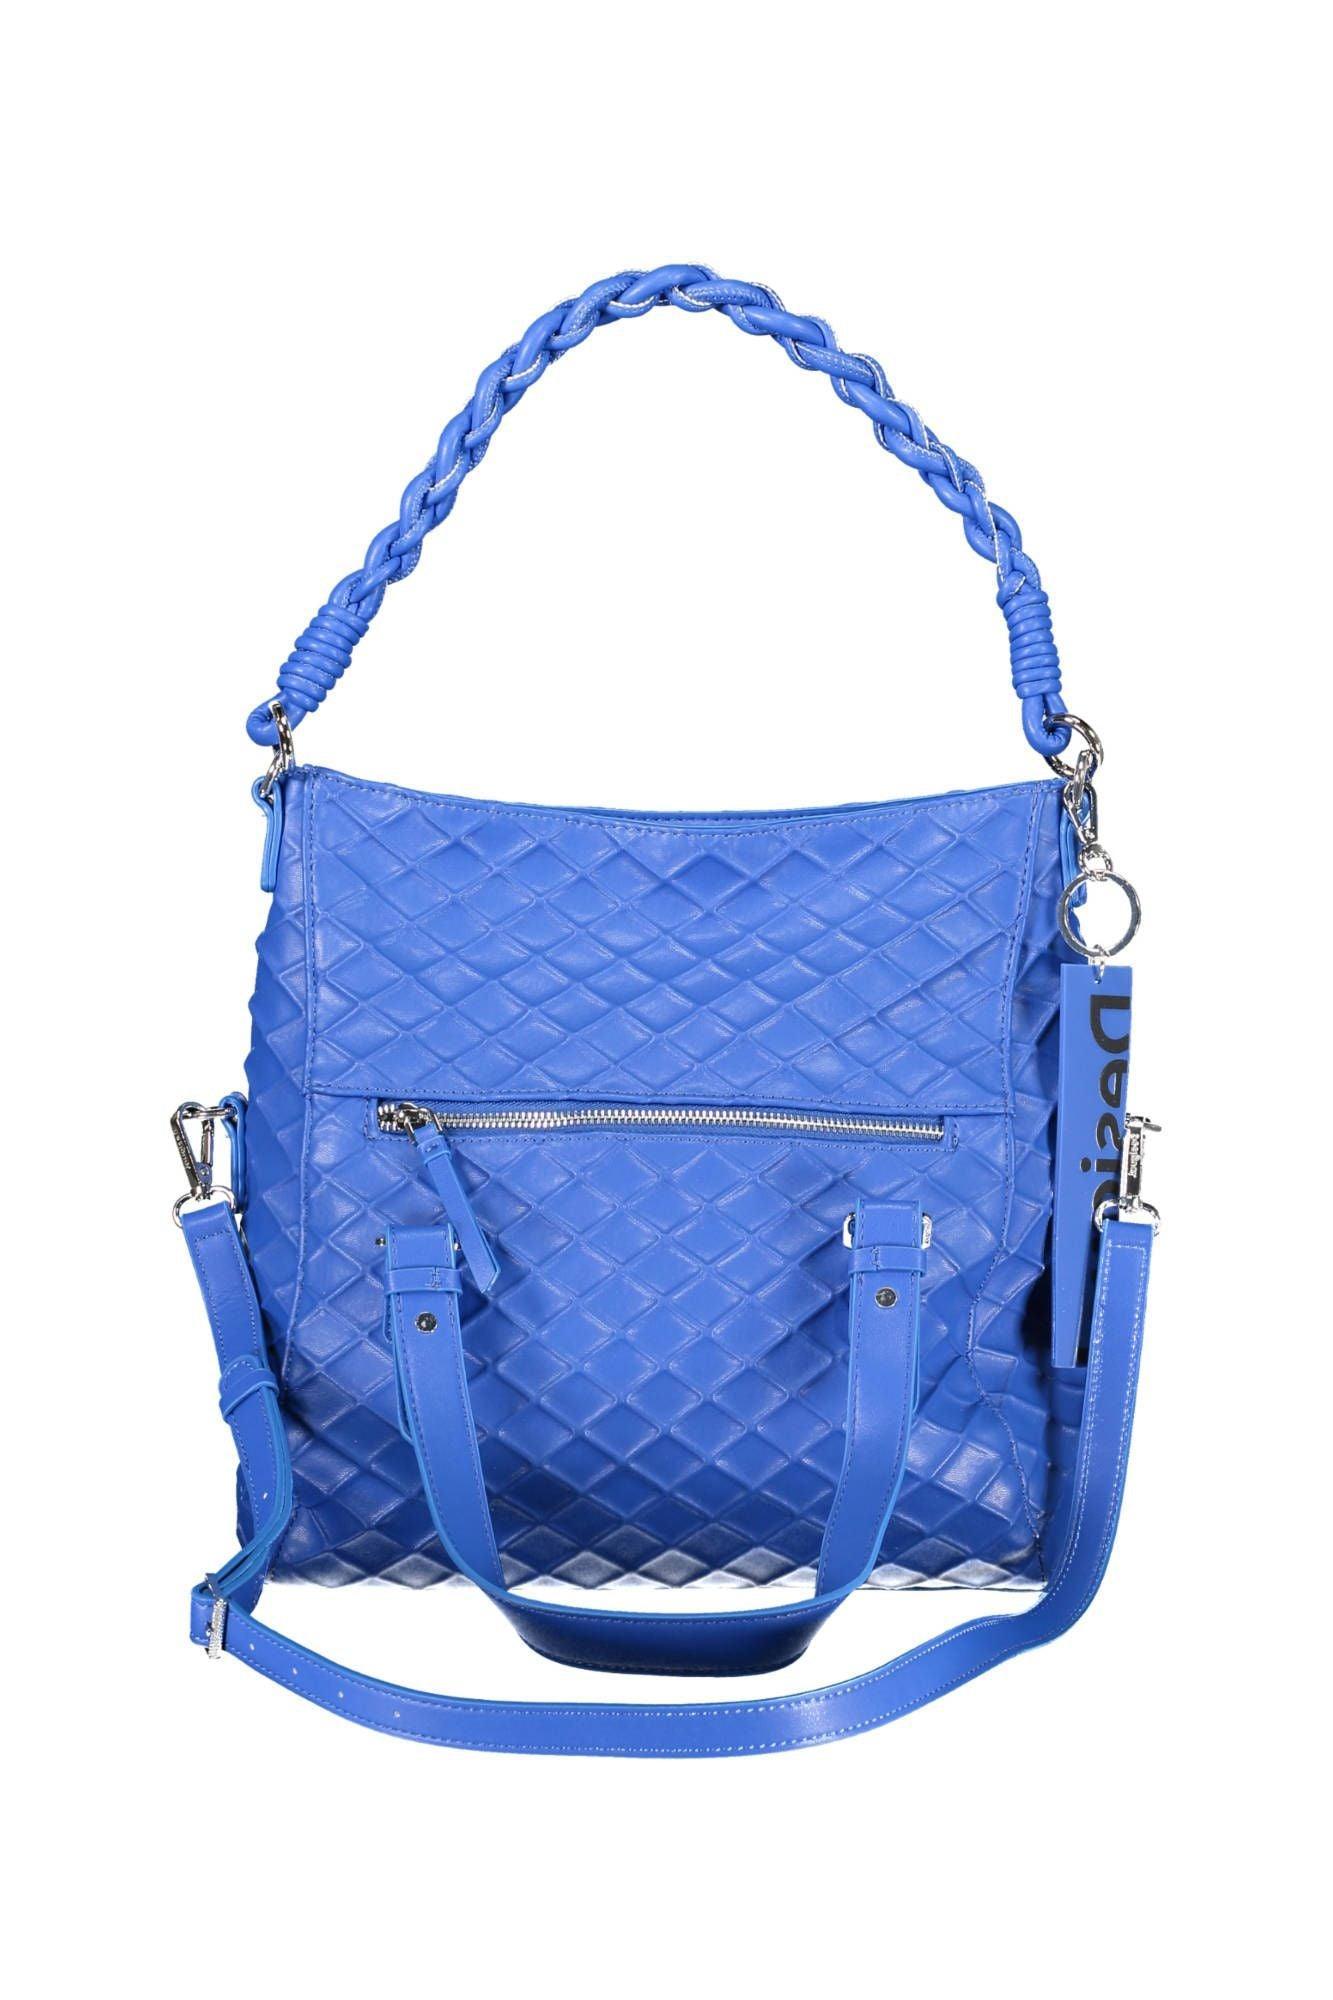 Desigual Chic Blue Contrasting Detail Handbag - PER.FASHION